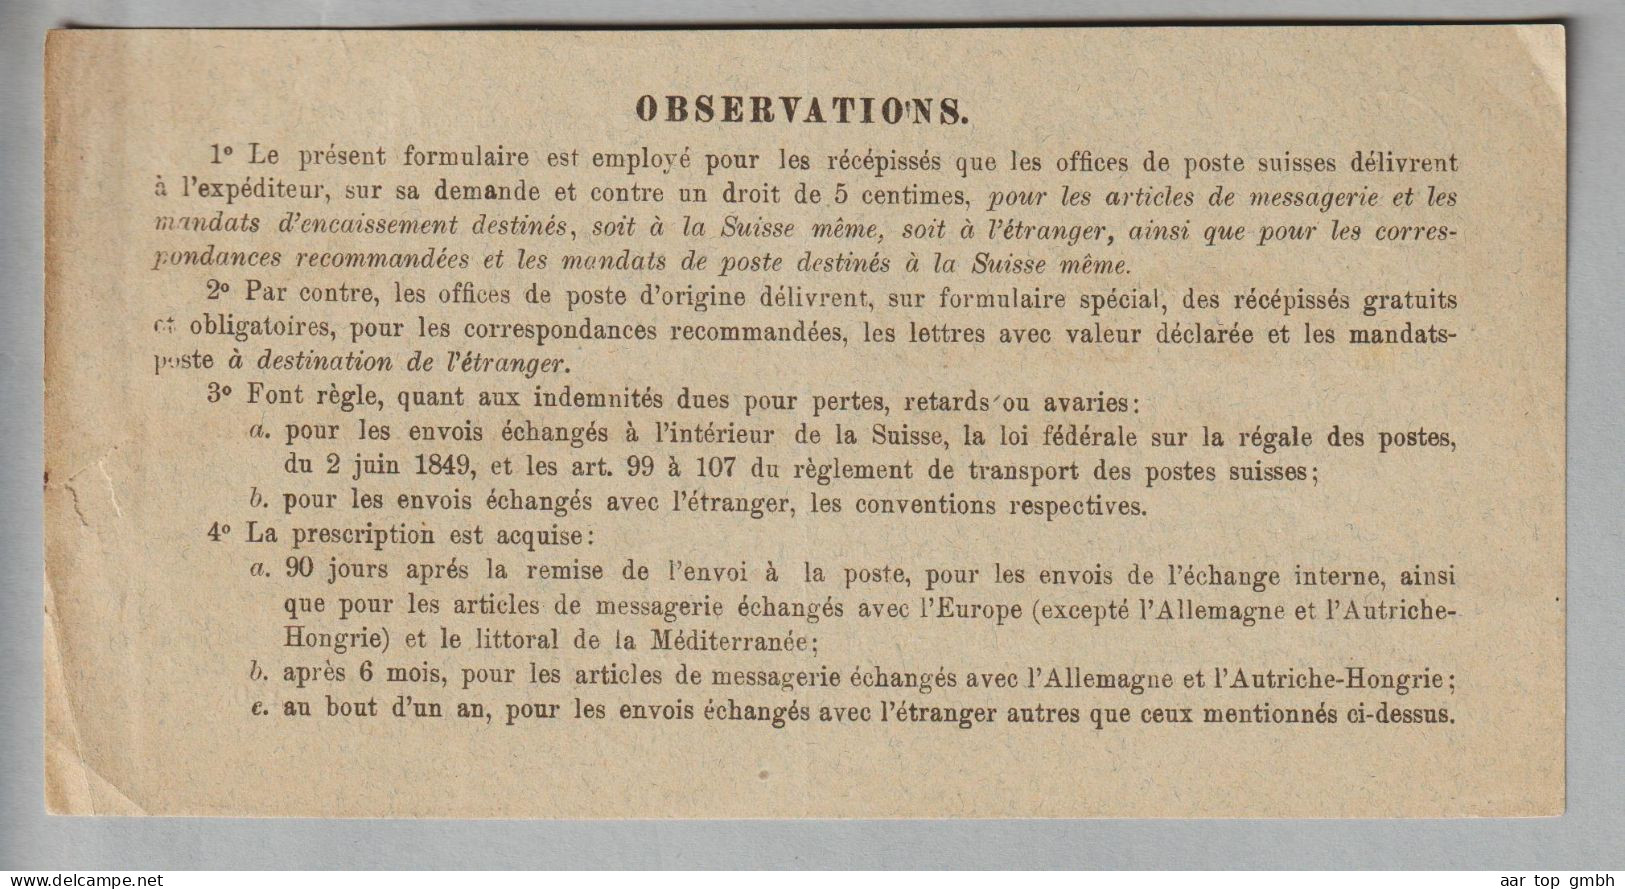 CH Heimat BE Tavannes 1886-02-24 Récépissé (Aufgabeschein) Fr. 213.60 - Cartas & Documentos